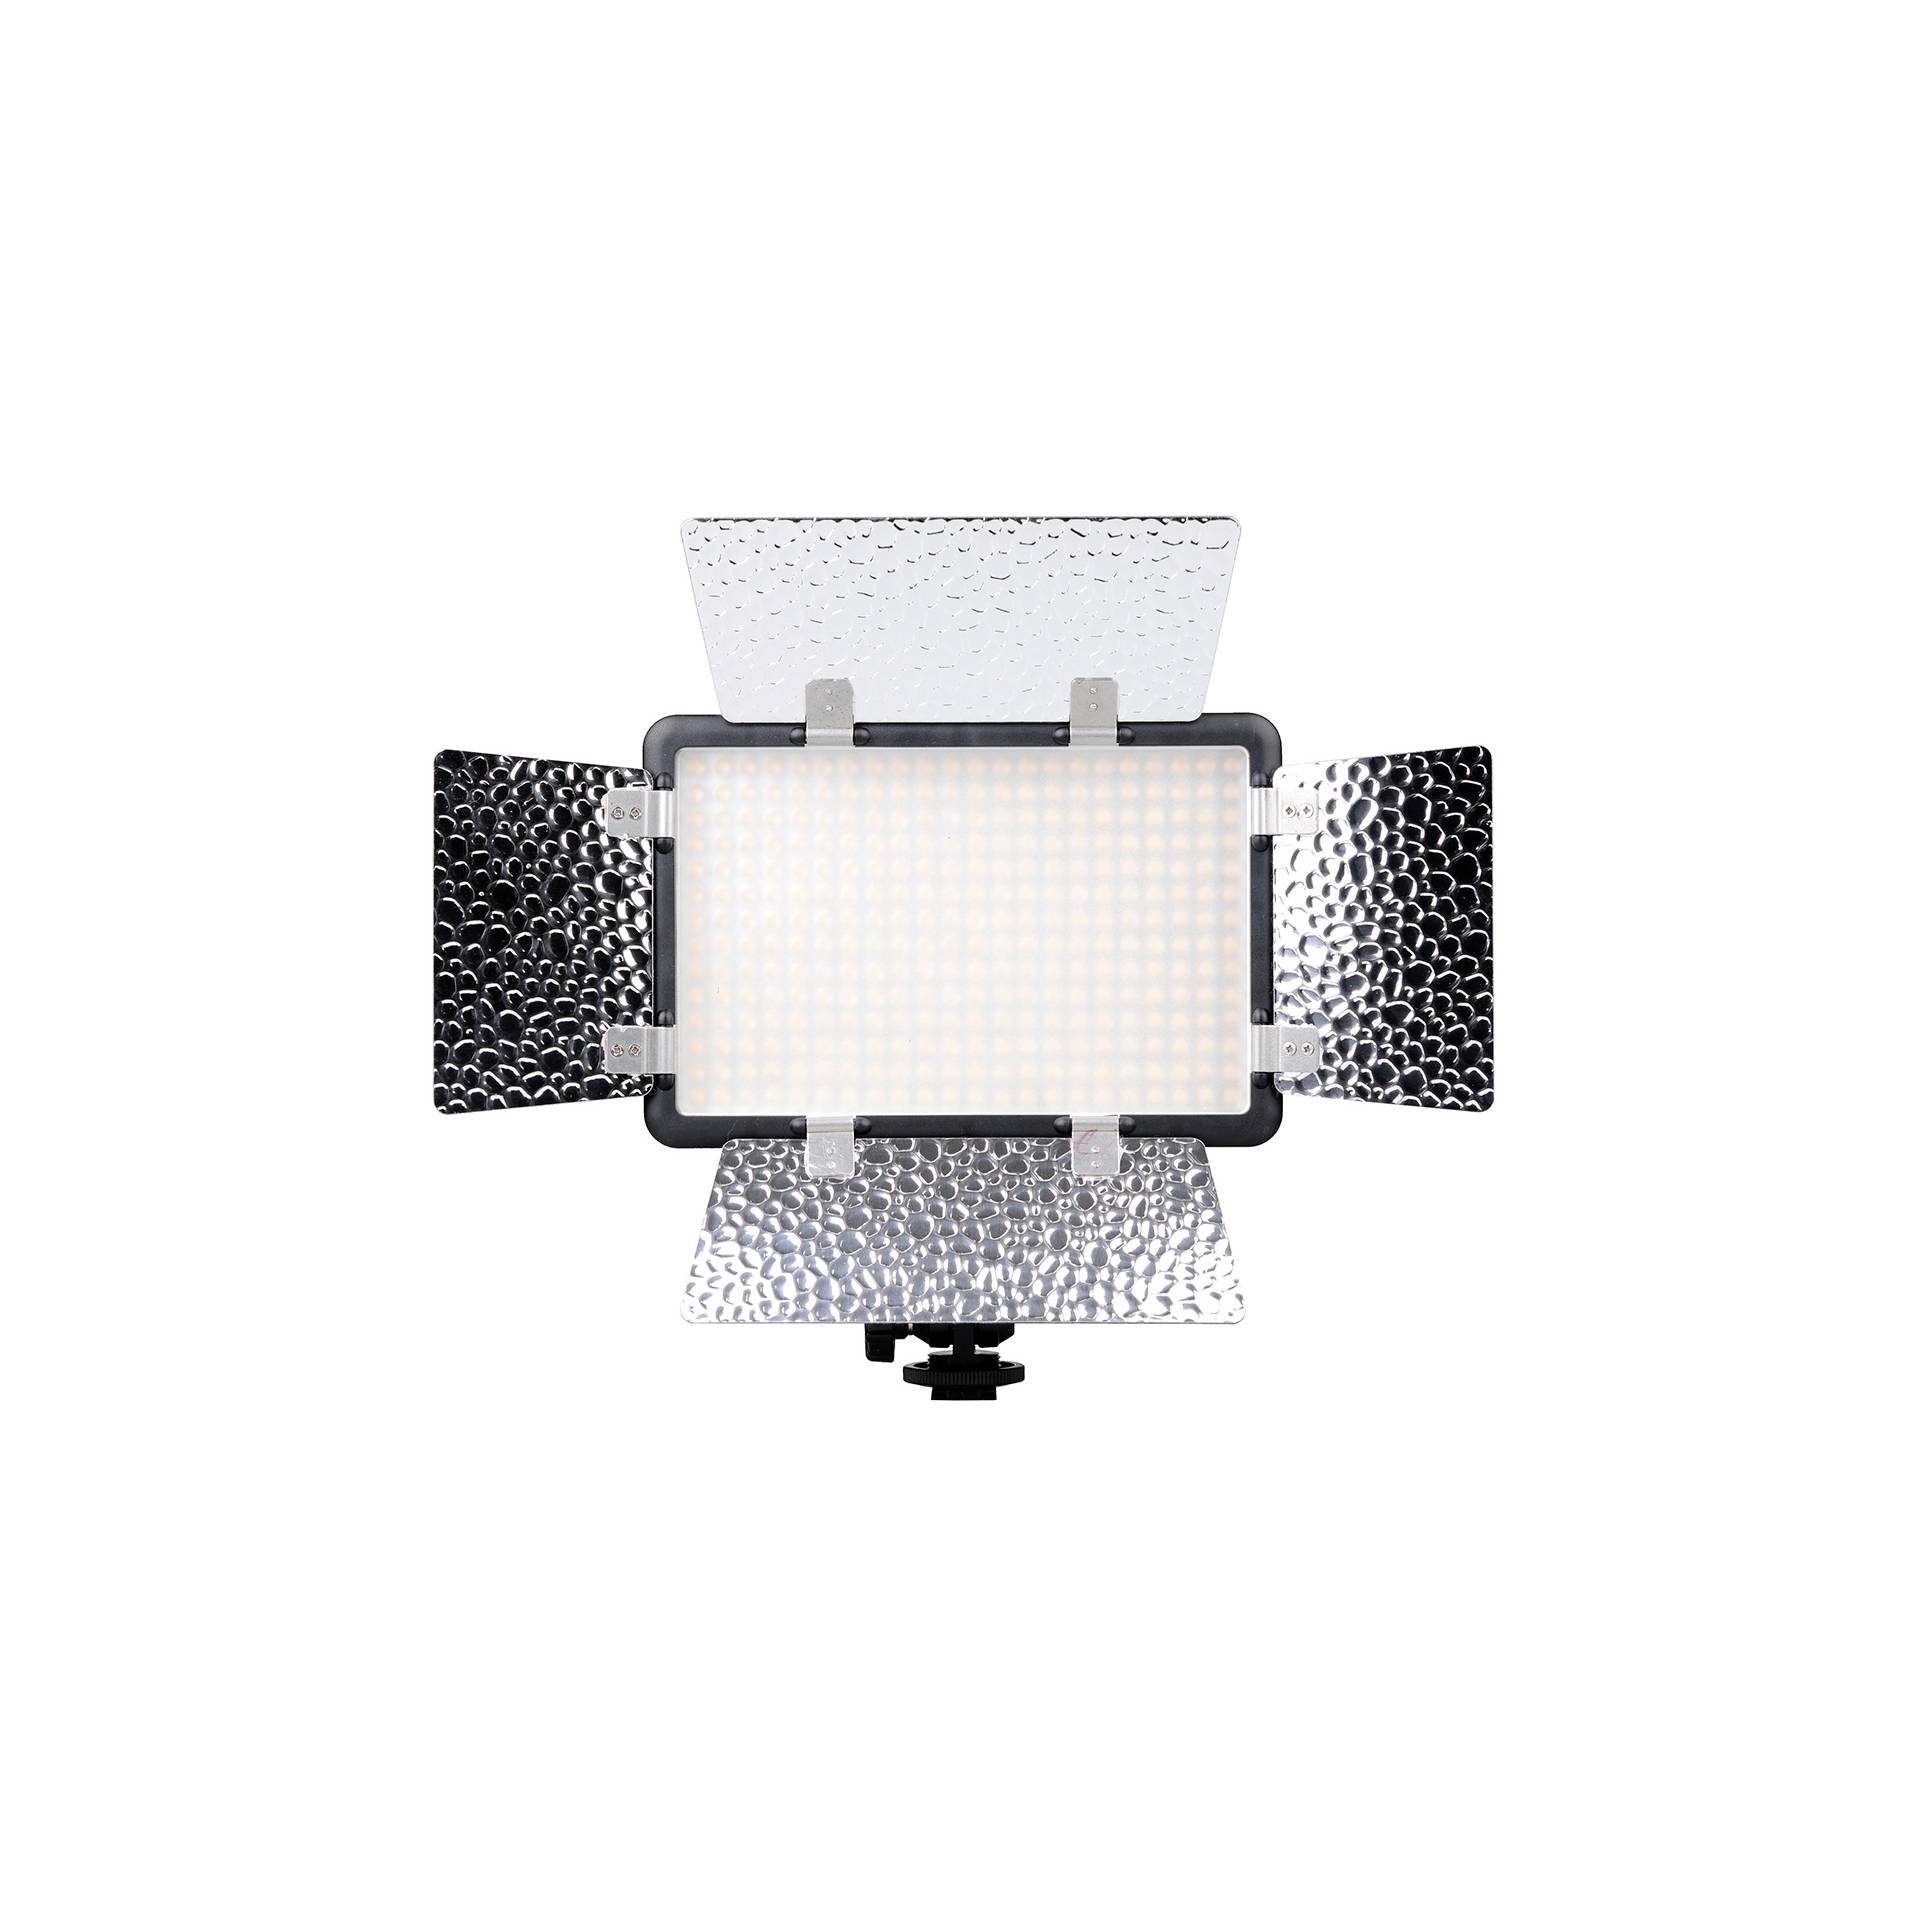 Godox LED308C II Video Light w. covering flap